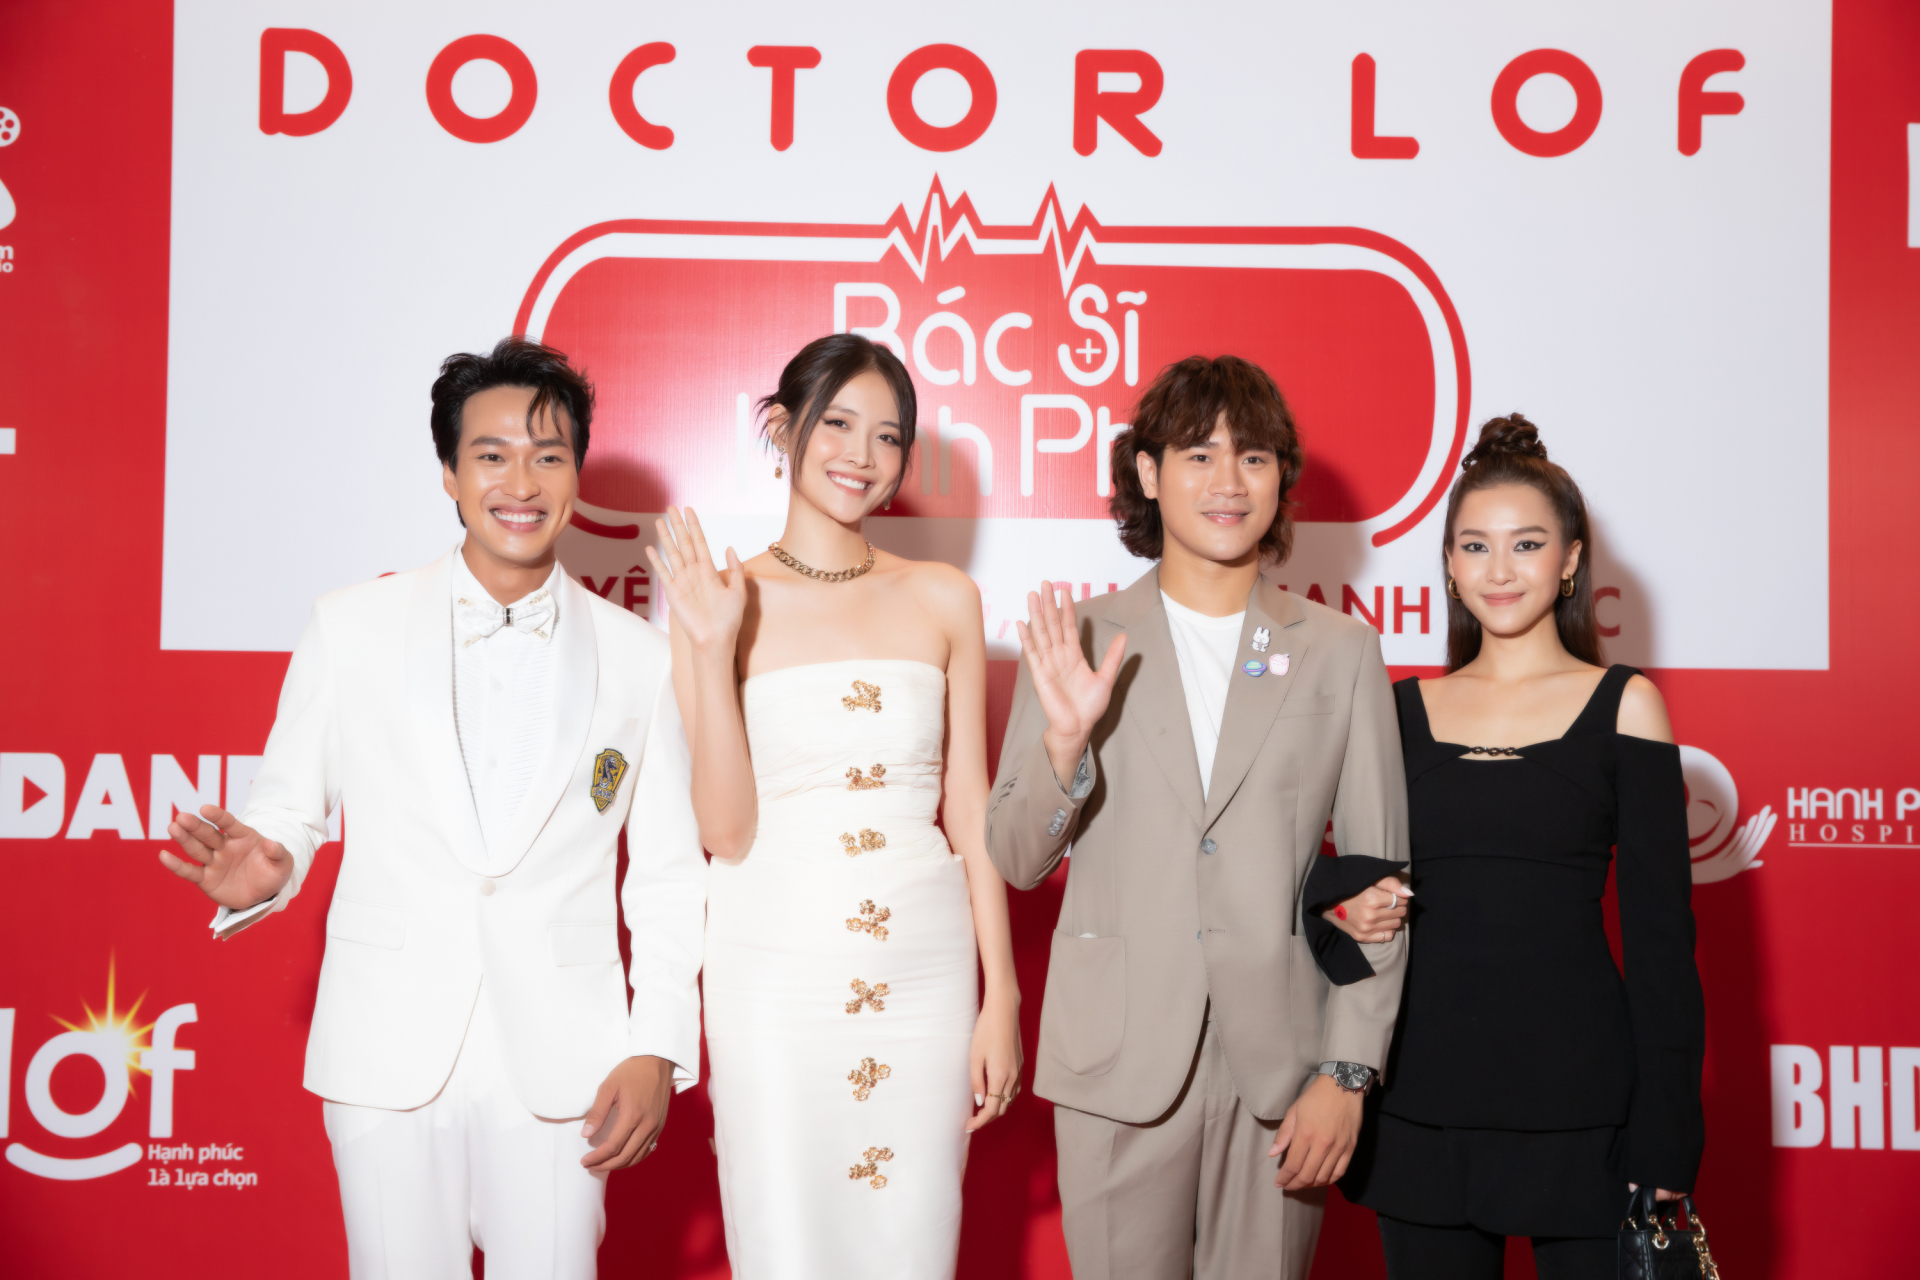 Dàn diễn viên chính bộ phim 'Doctor Lof' đổ bộ thảm đỏ sự kiện ra mắt phim.